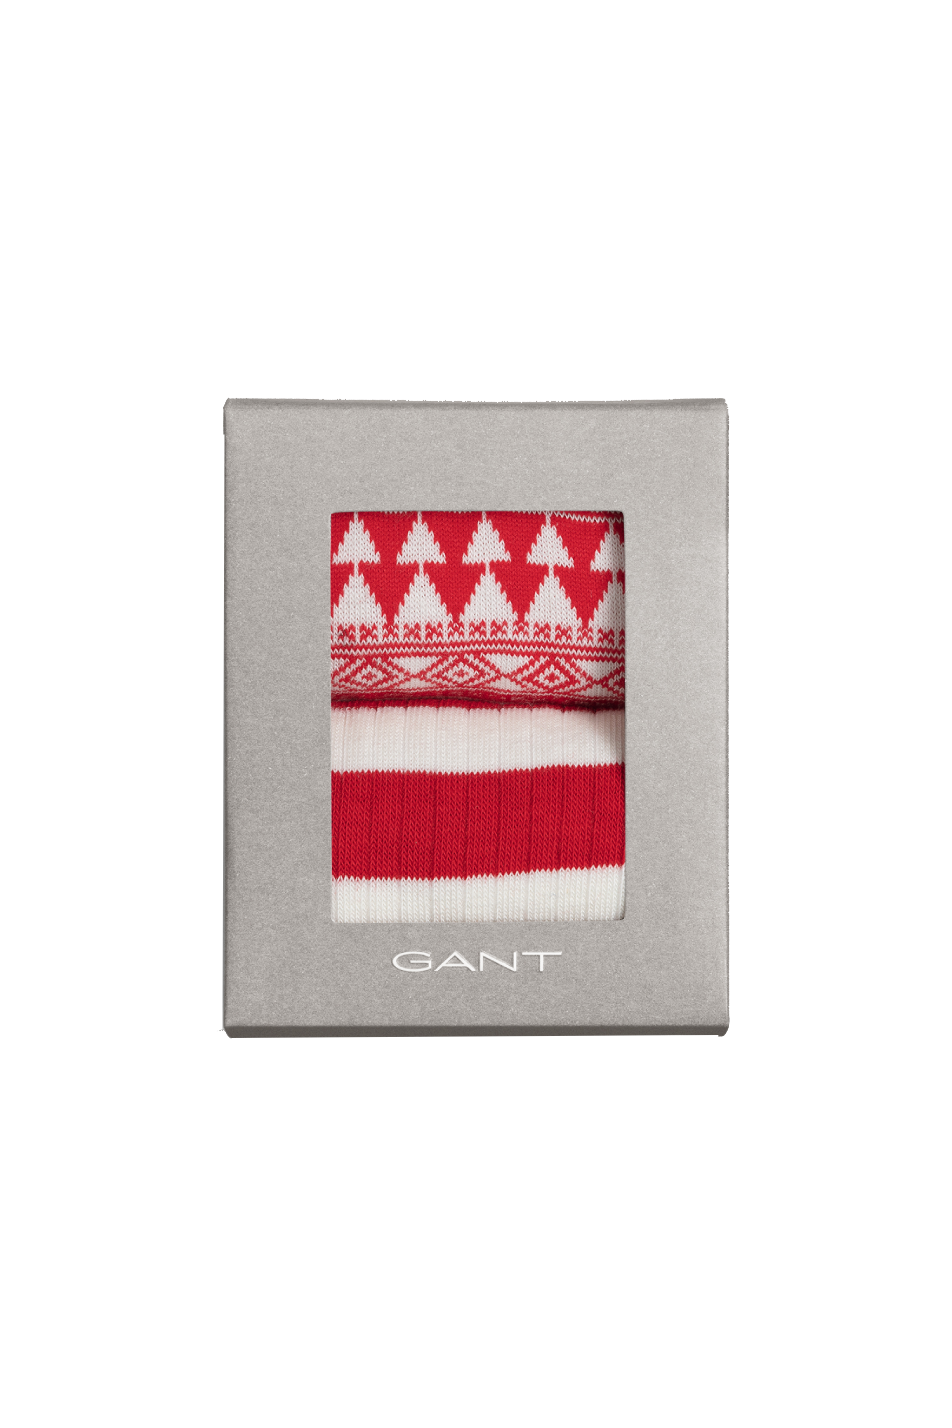 Gant Fairisle Socks Men’s 2 Pack Gift Box